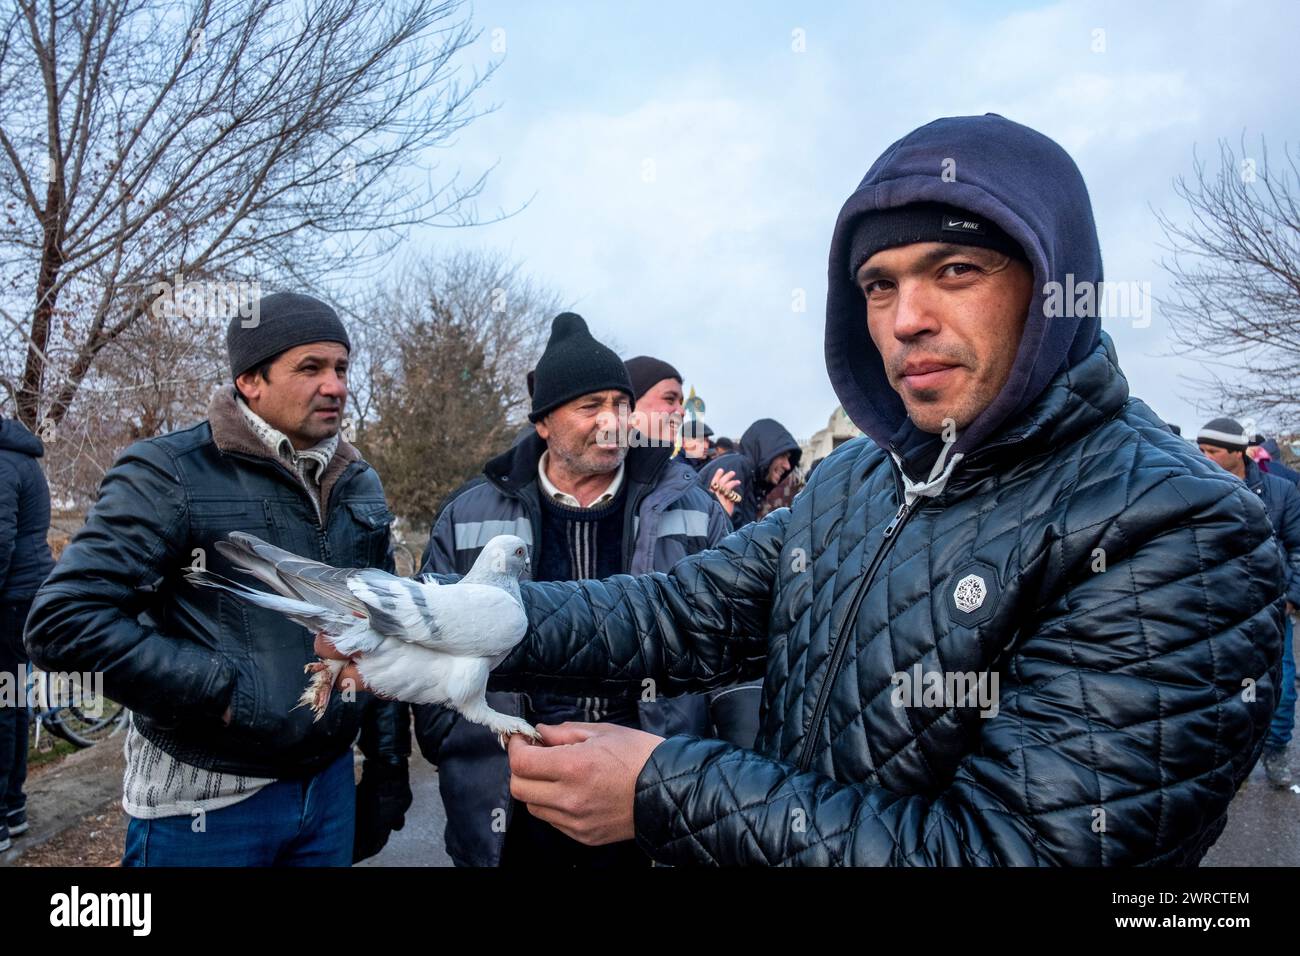 Eine Gruppe von Männern stellt ihre Tauben im Stadtzentrum aus. Buchara, Usbekistan. Stockfoto